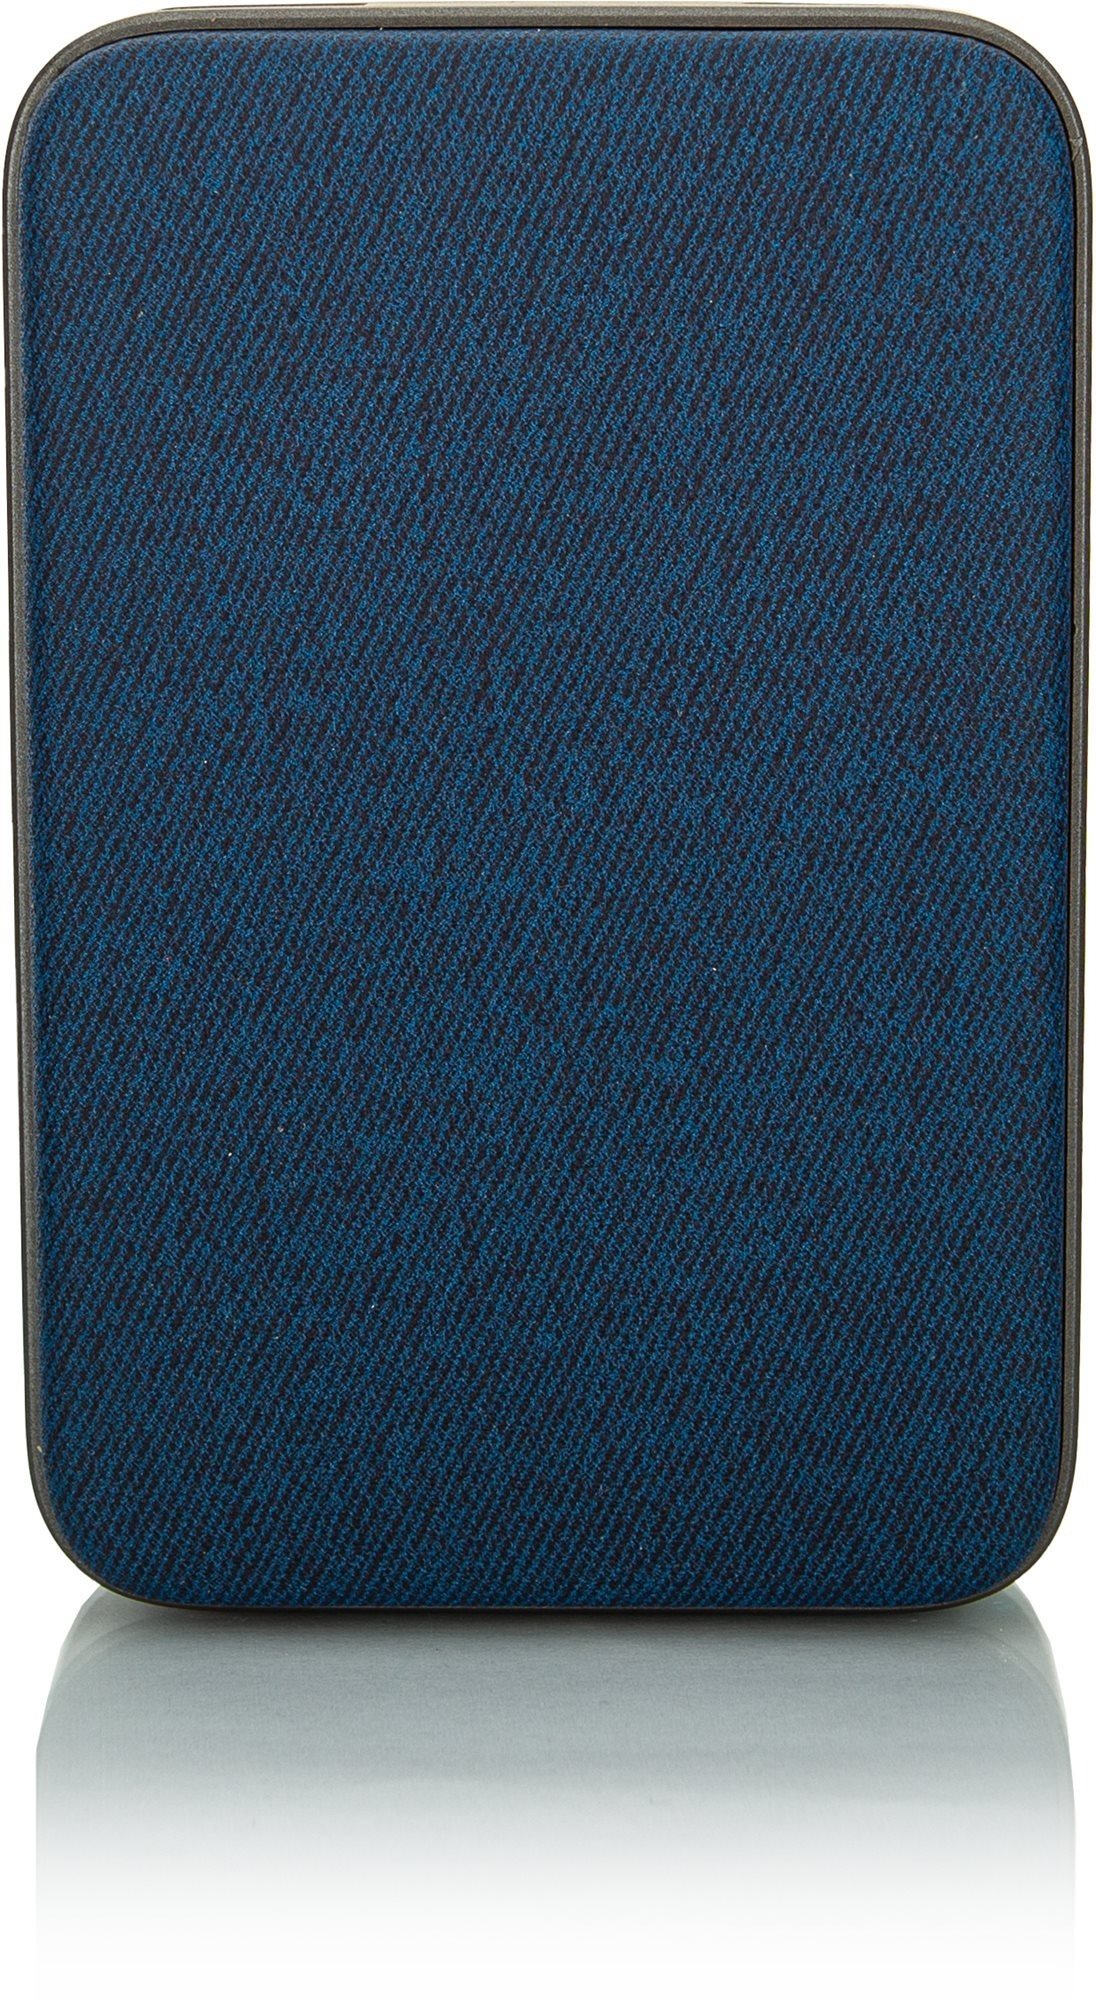 Powerbank Eloop E33 10000mAh PD (18W) Blue